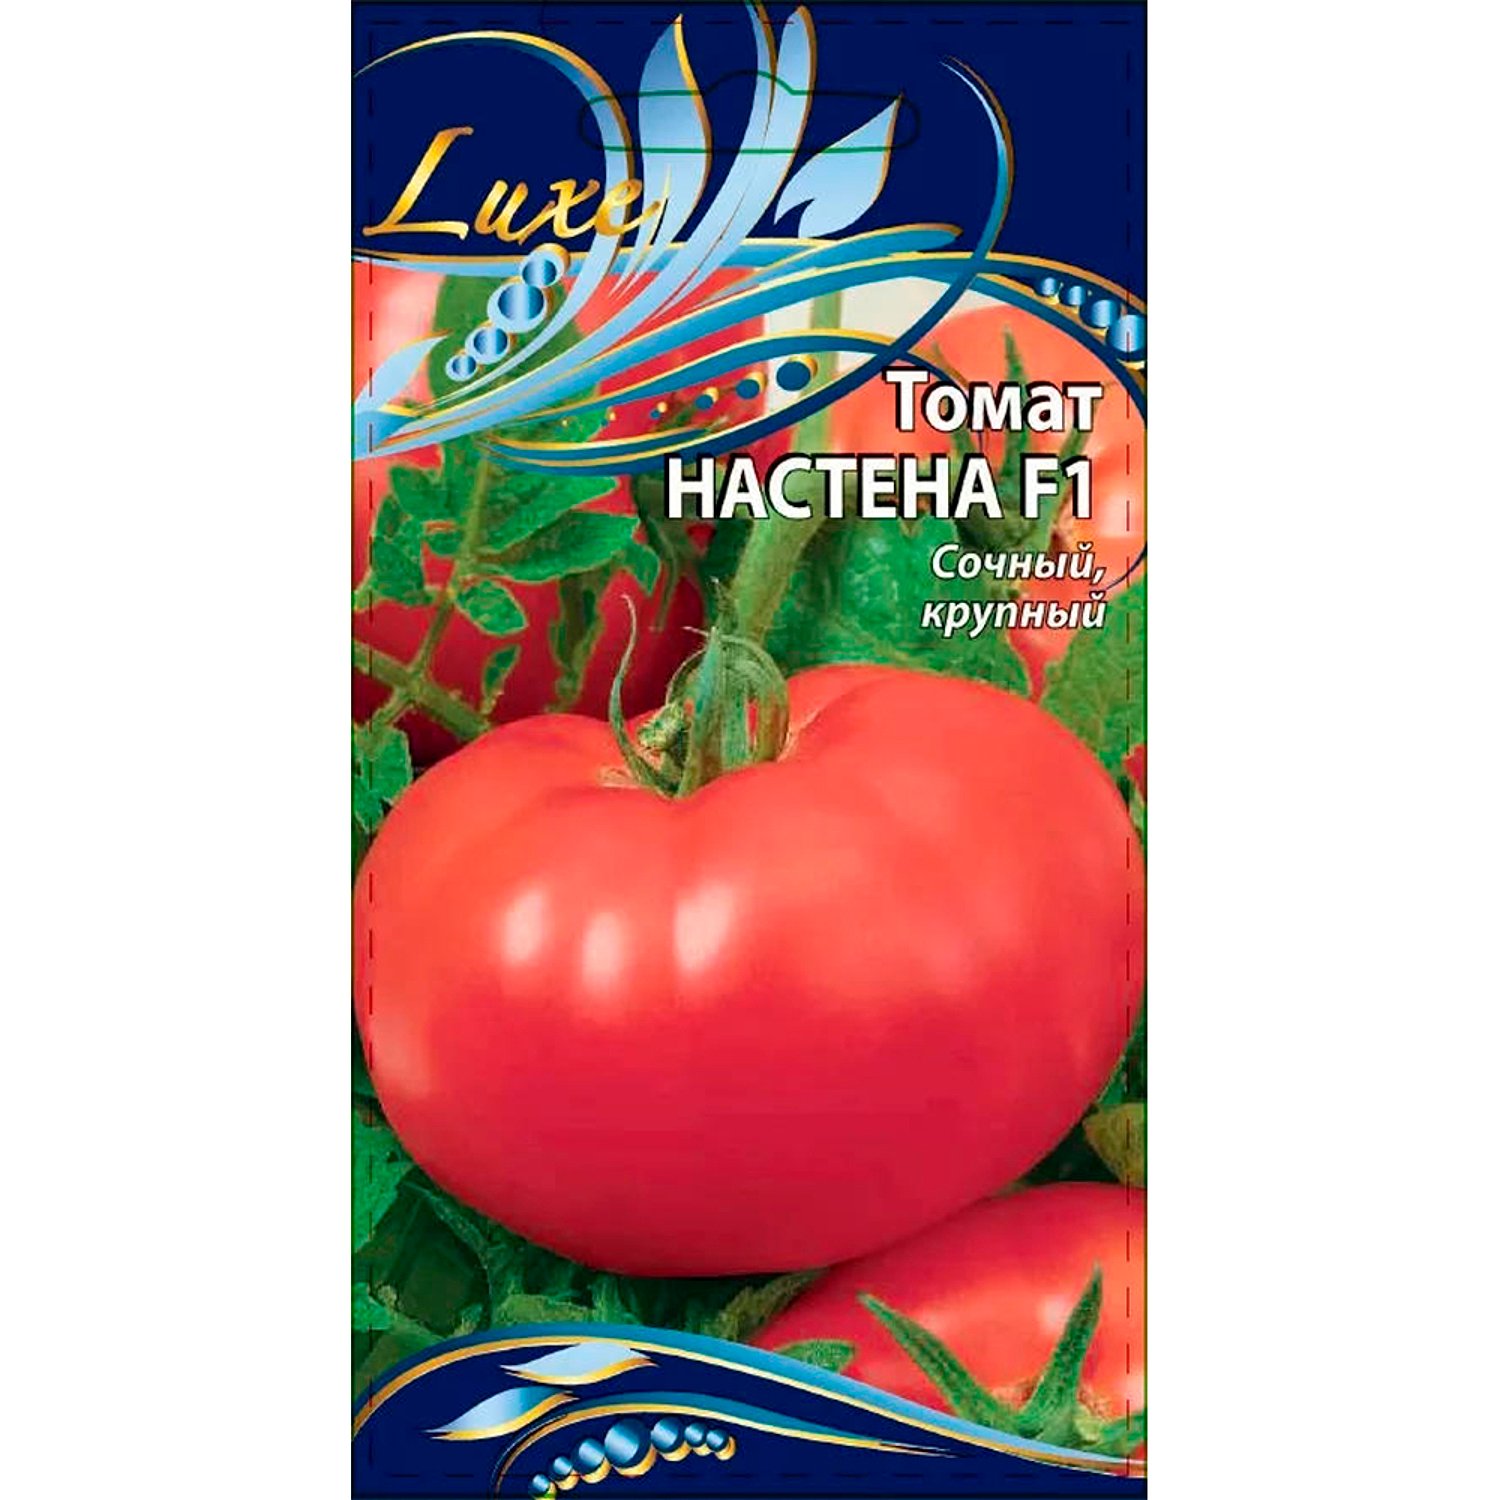 Аэлита томат настёна f1